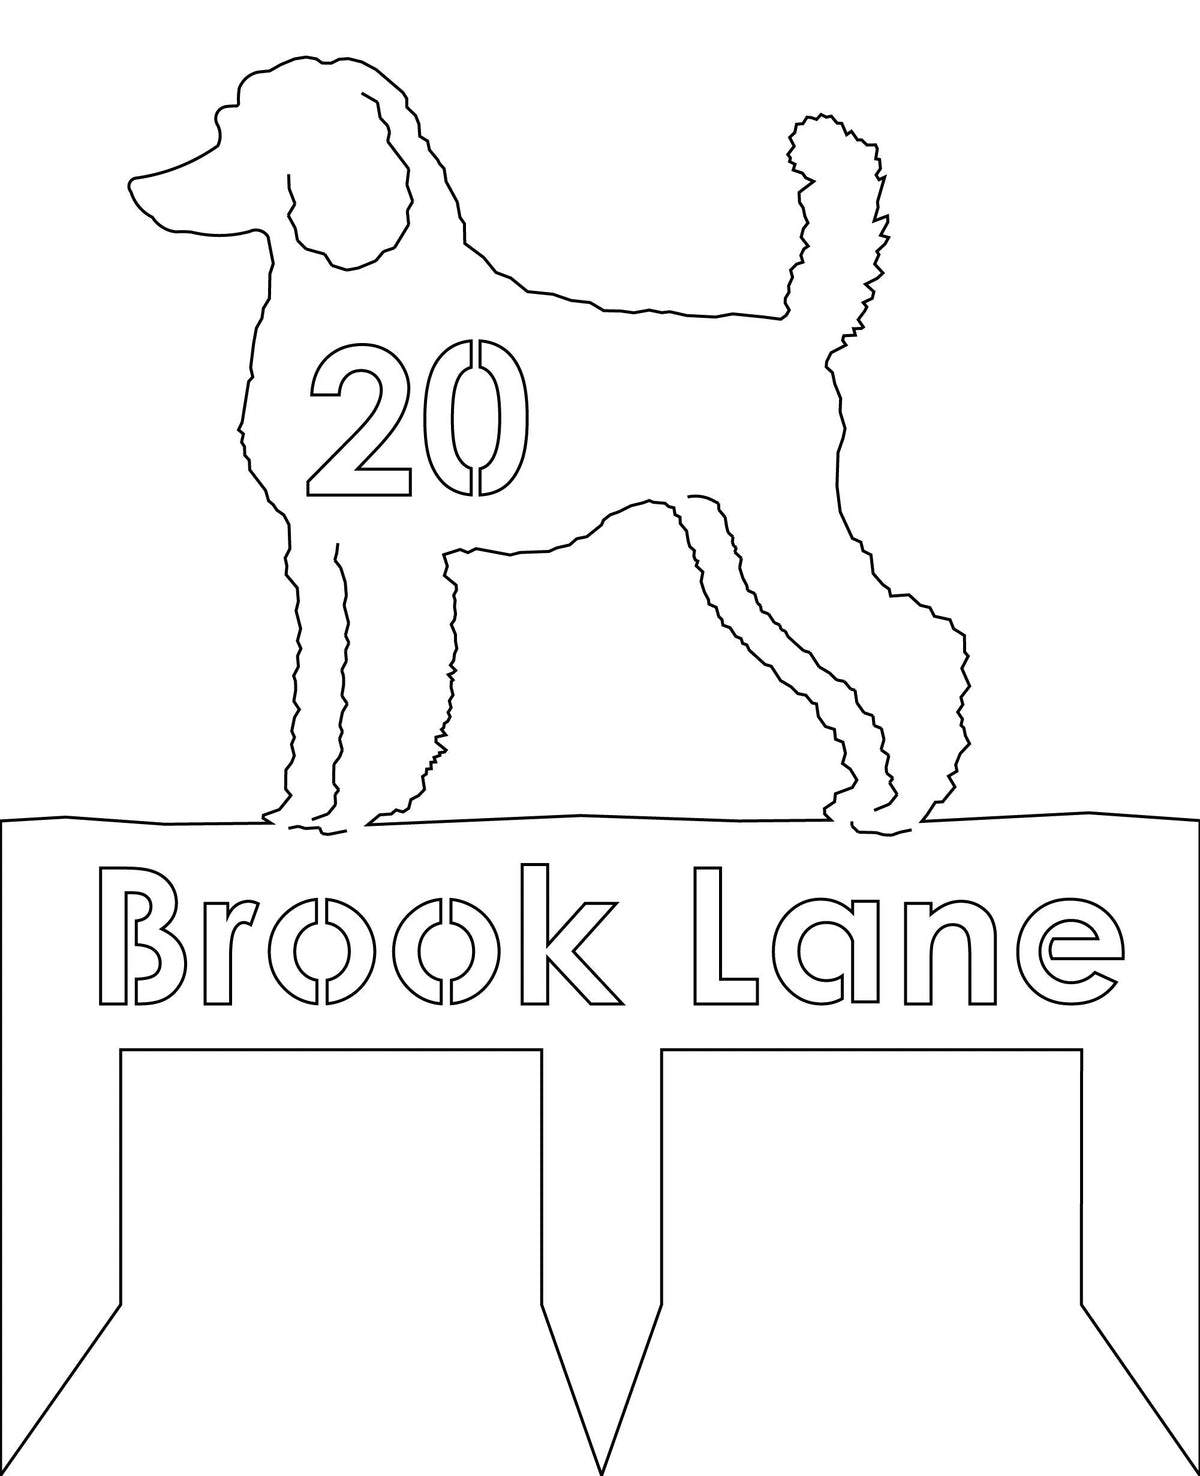 Poodle dog address stake